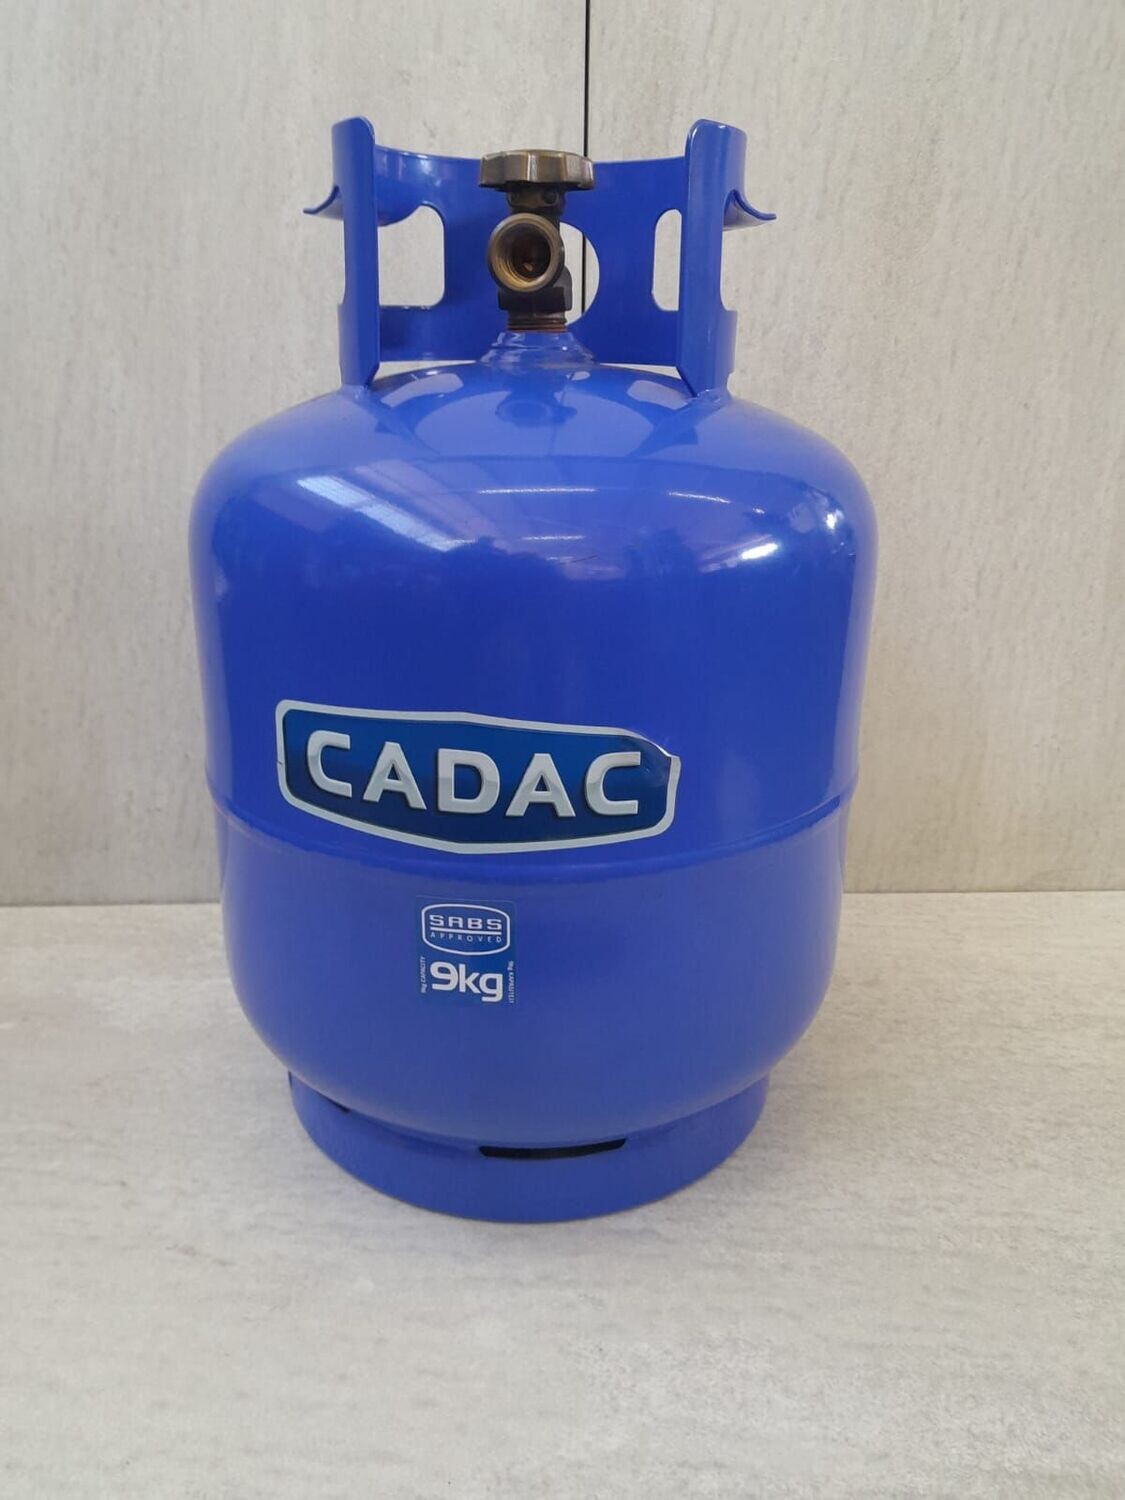 CADAC 9kg Lpg Empty Cylinder